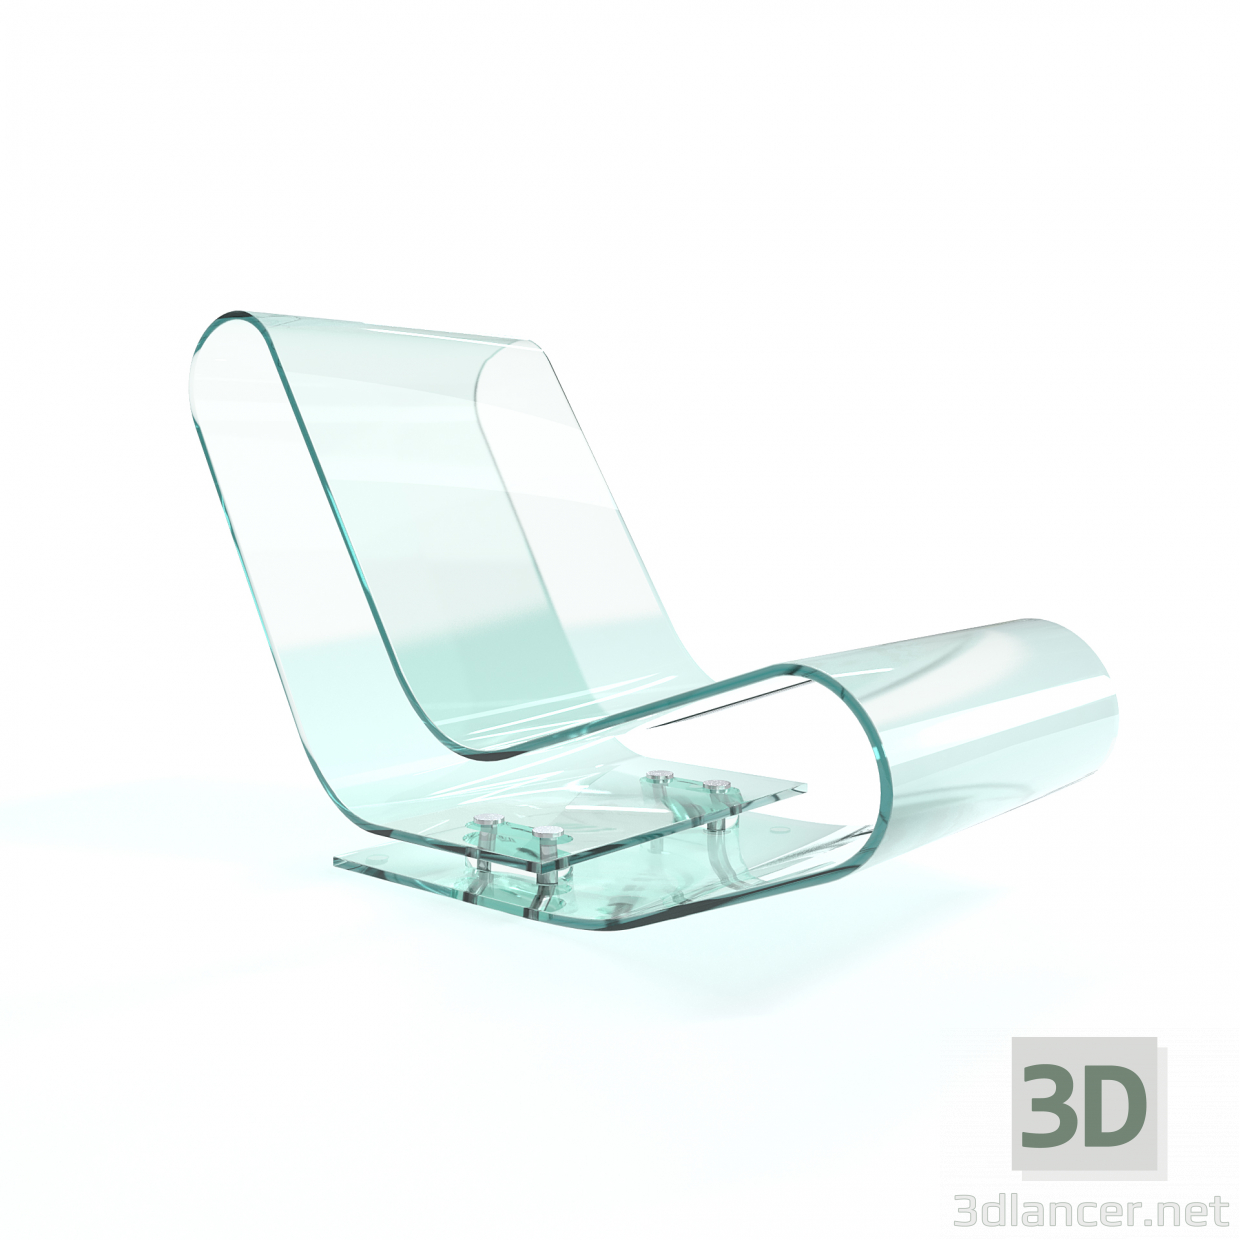 3D cam koltuk modeli satın - render